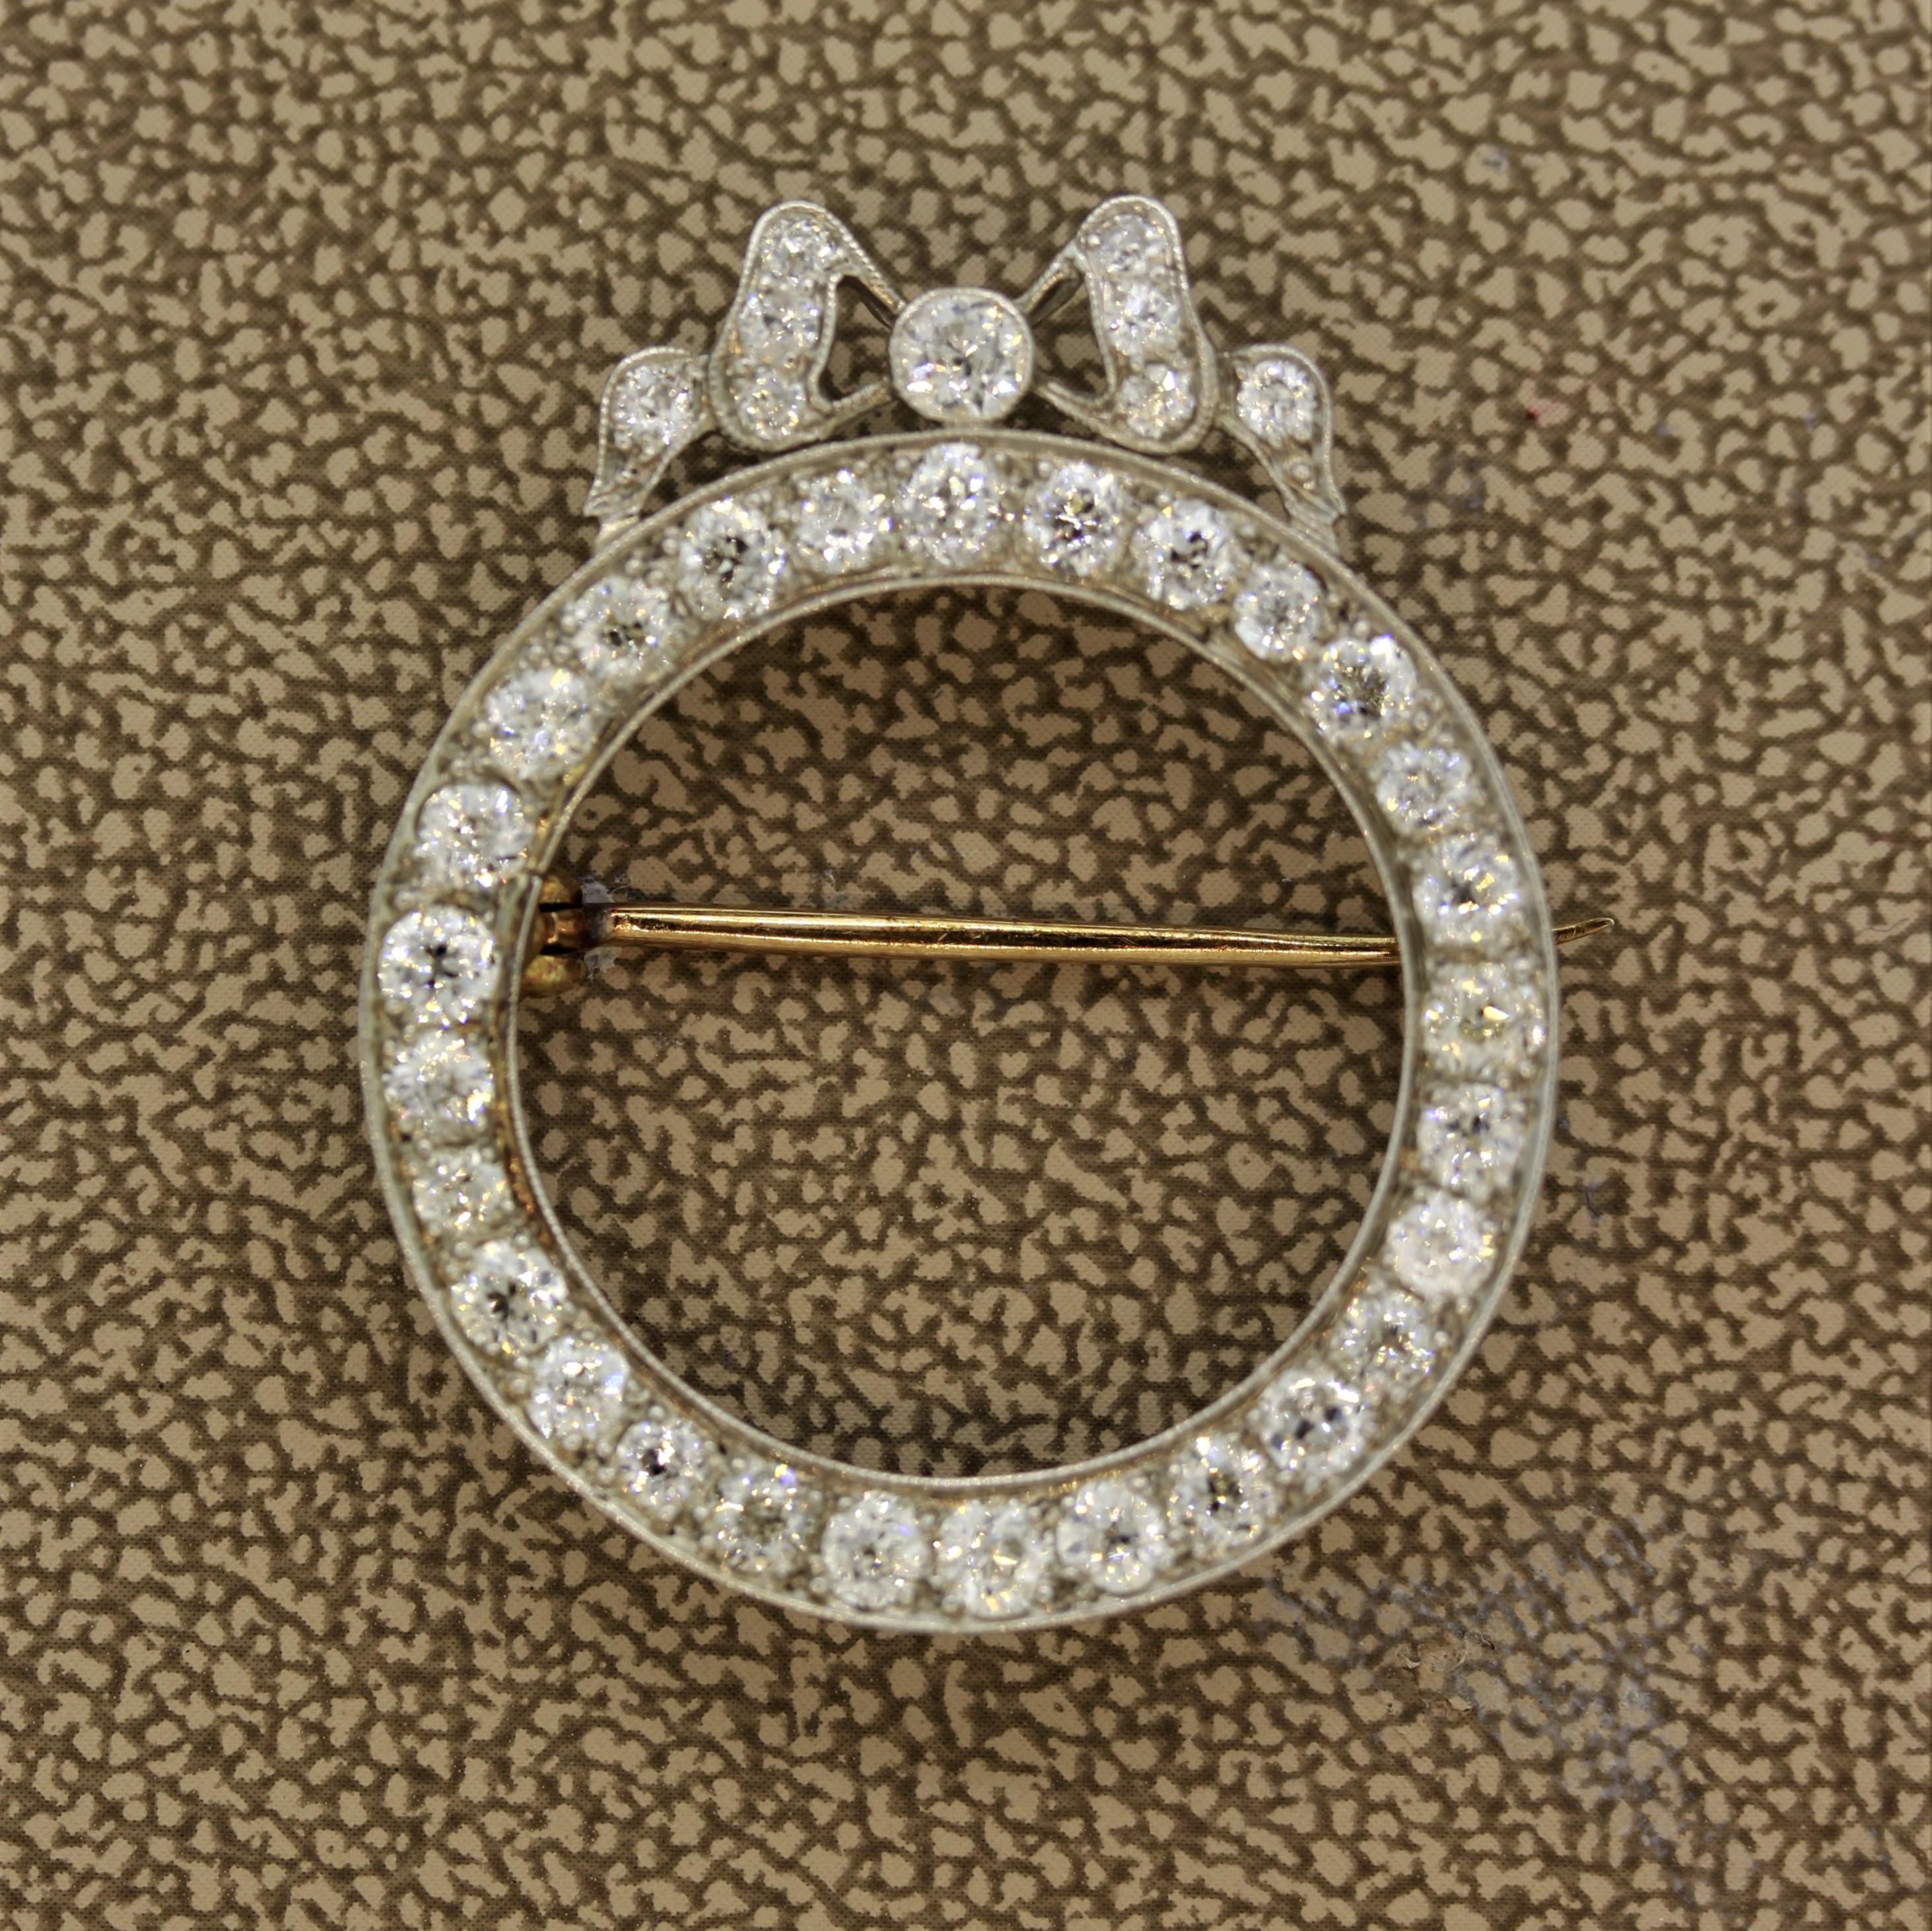 Une pièce de bijouterie édouardienne classique, douce et finement réalisée, vers 1905. Elle comporte 3 carats de diamants ronds de taille européenne disposés en cercle ainsi qu'en un fin nœud sur le dessus de la broche. Les bords de la pièce sont